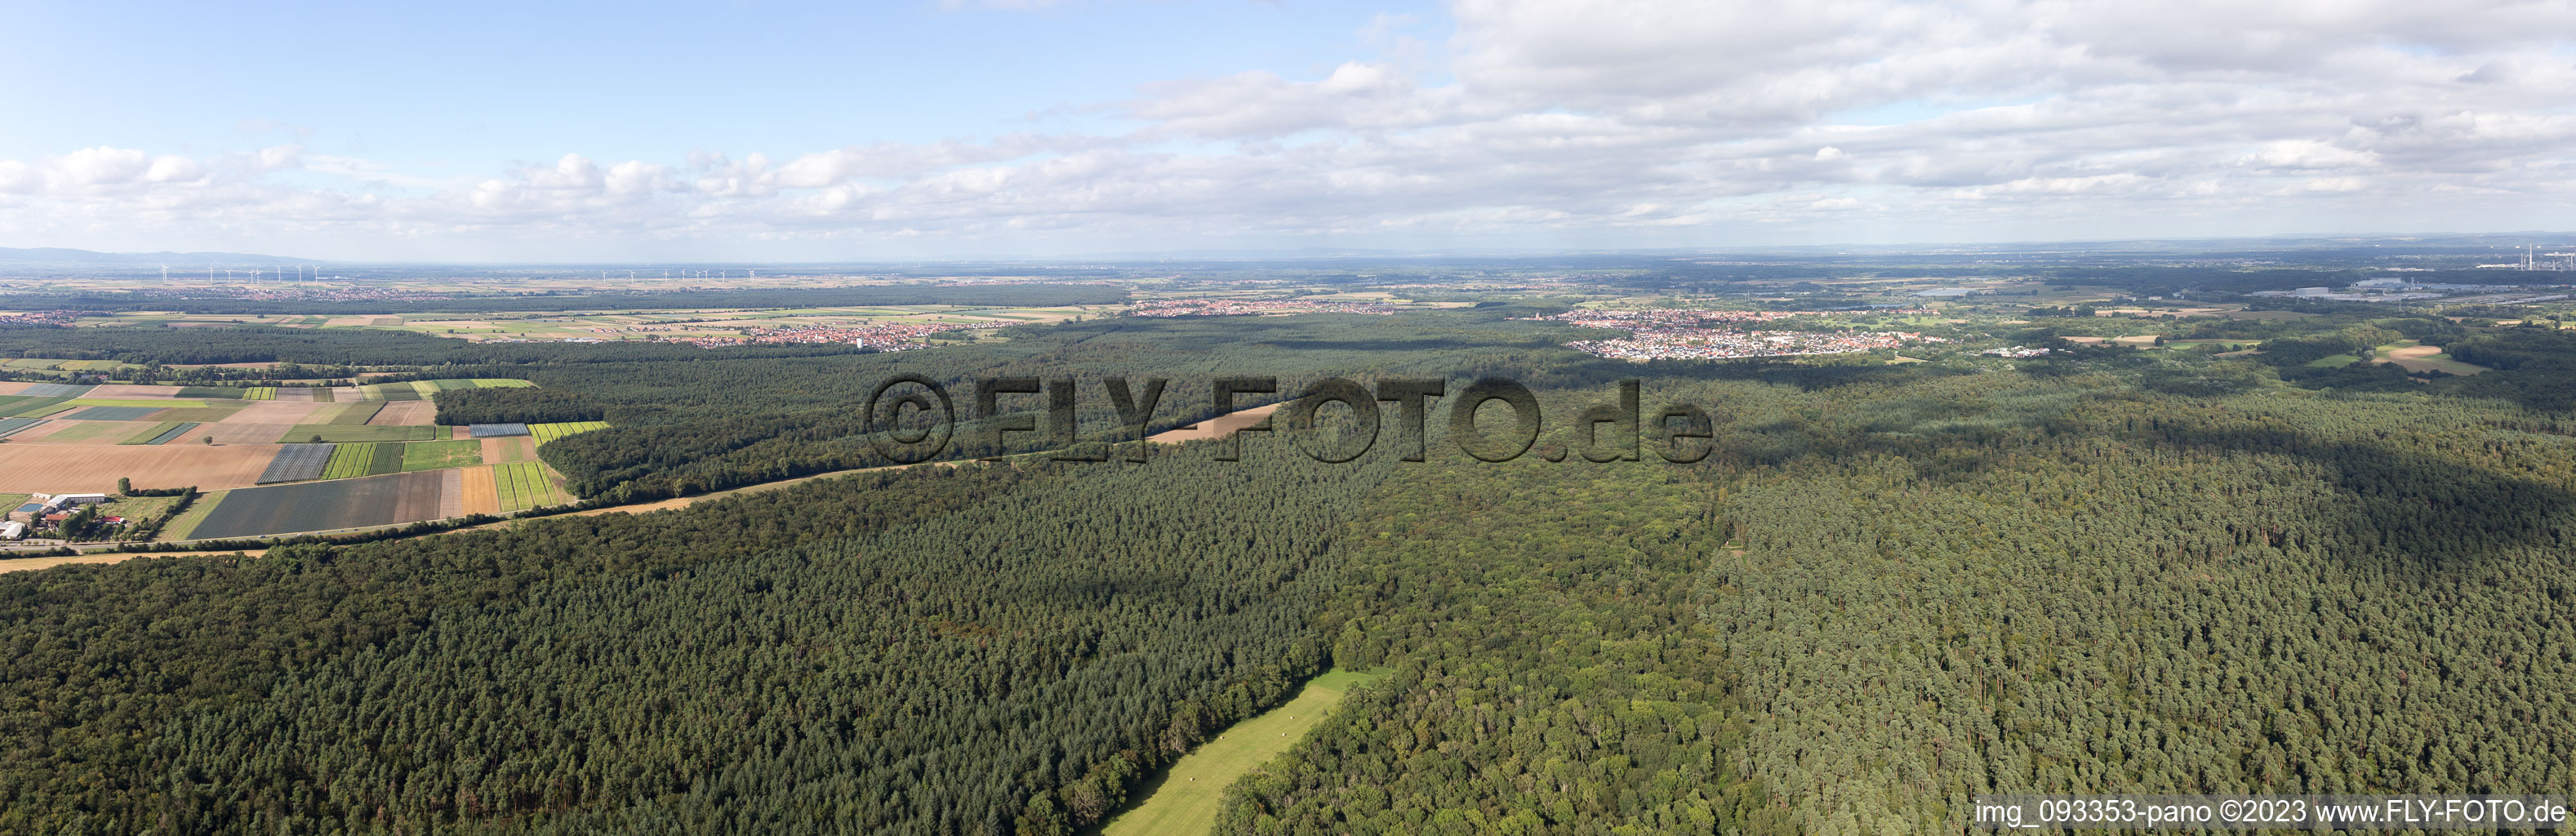 Vue aérienne de Panorama à Kandel dans le département Rhénanie-Palatinat, Allemagne